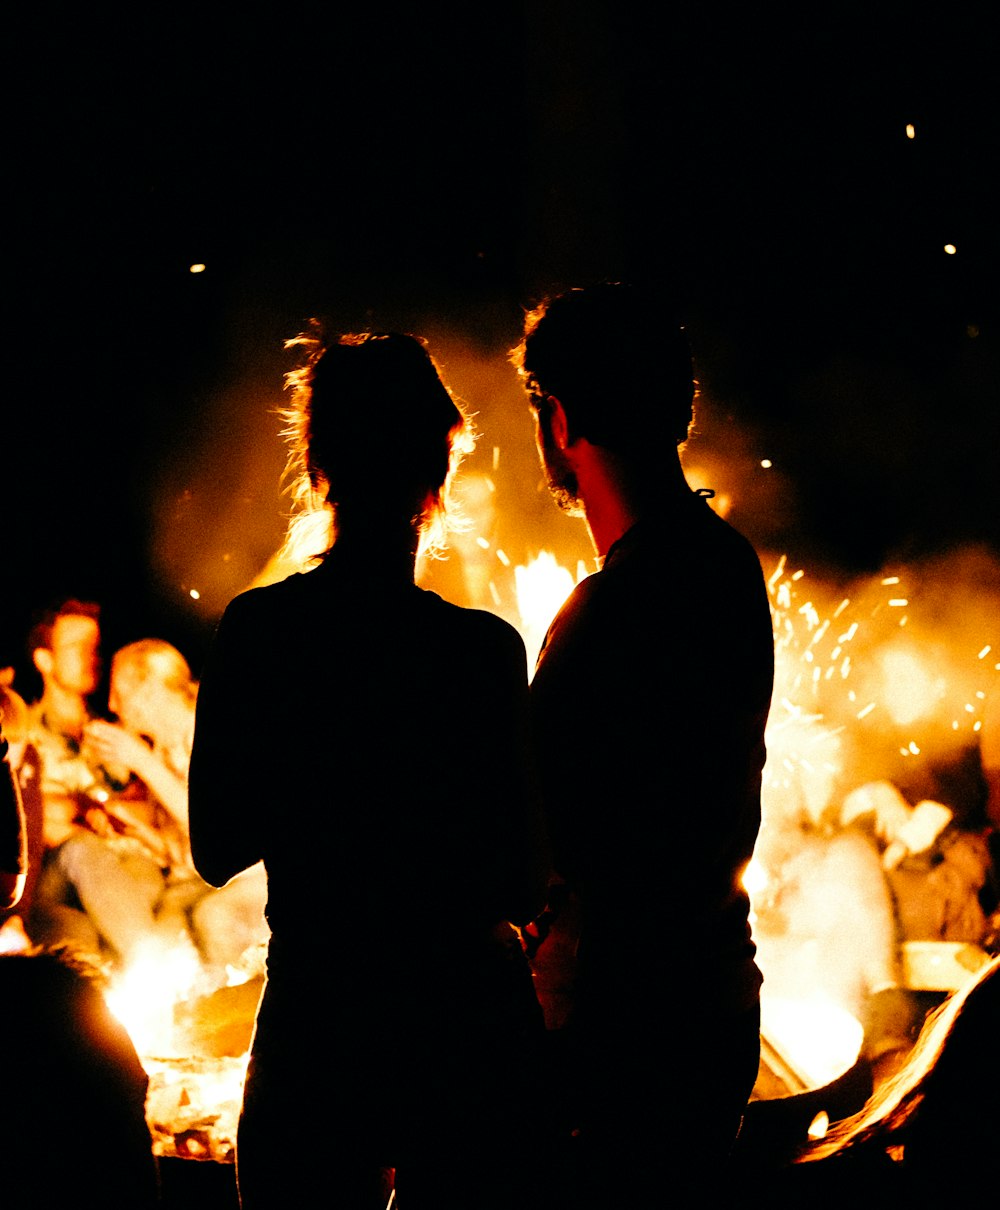 모닥불 앞에 서 있는 두 사람